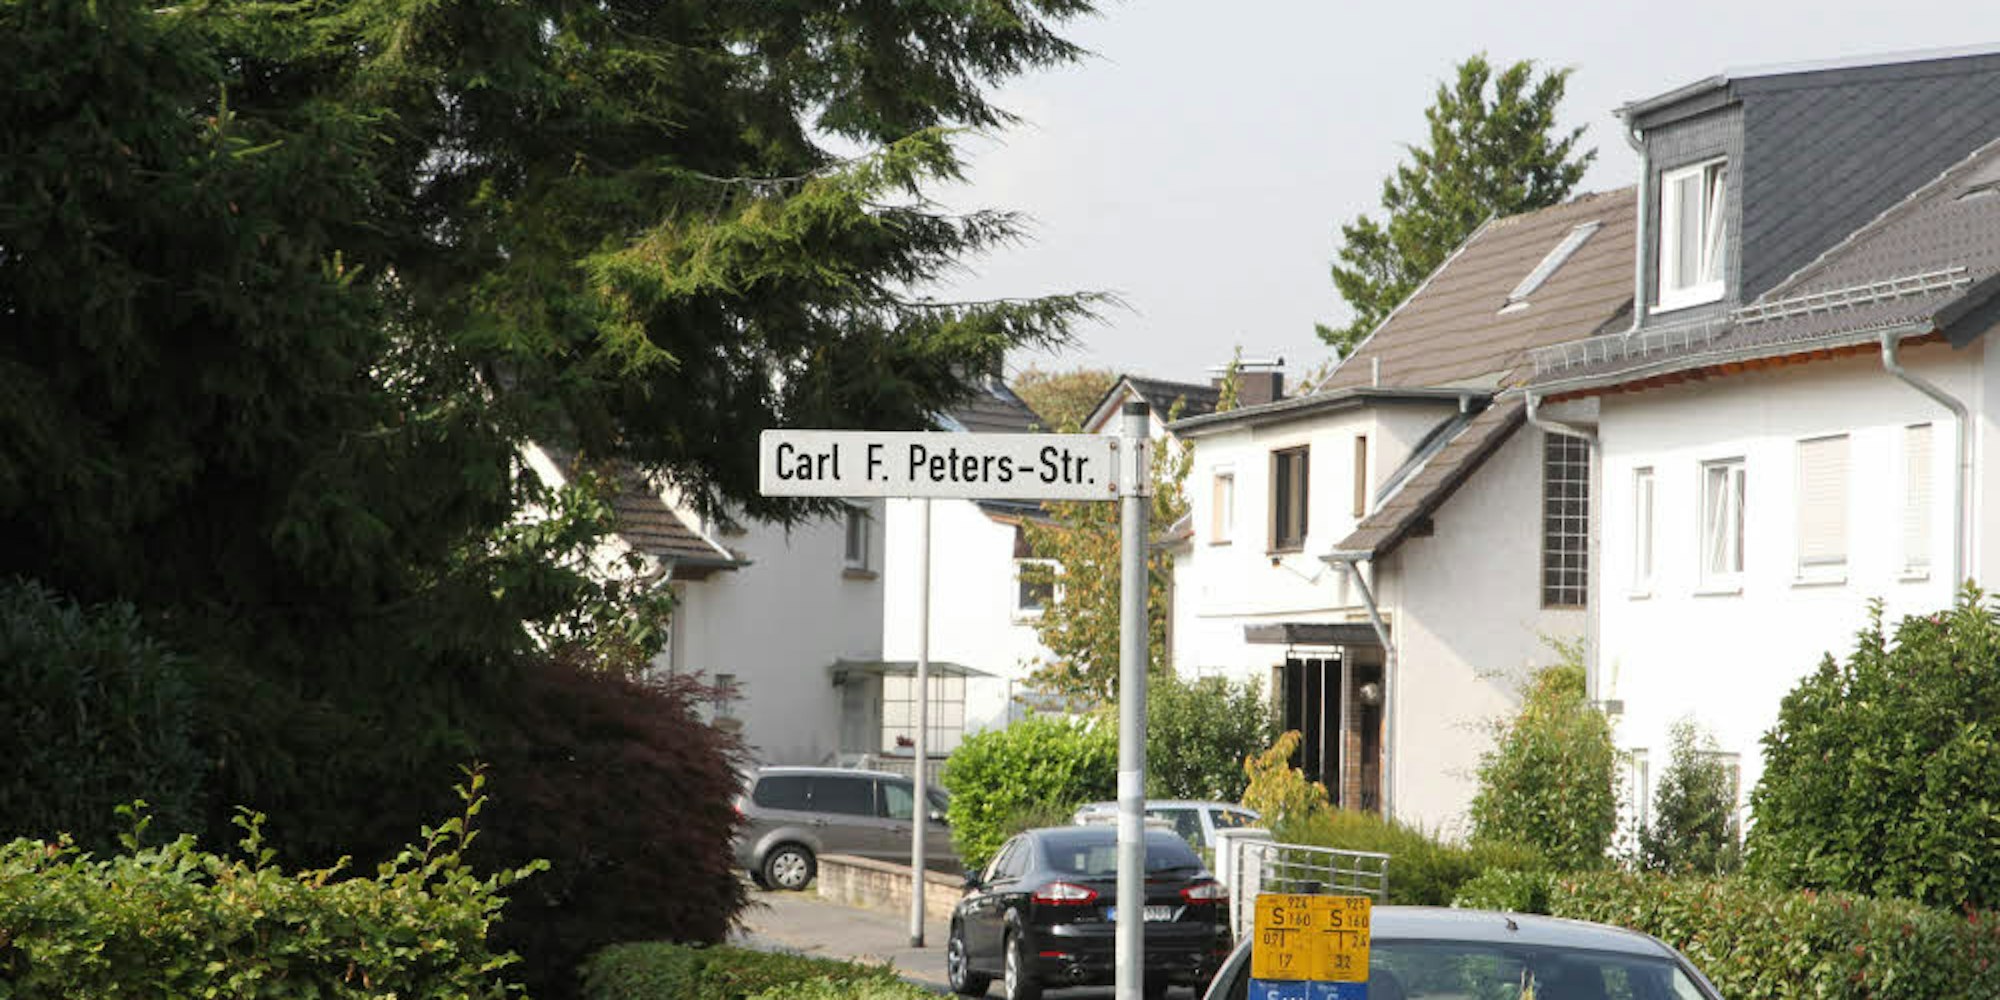 Rheinische Lösung: Statt an den Kolonialisten Carl Peters erinnert die Straße in Siegburg nun an den Musikverleger Carl-F. Peters.